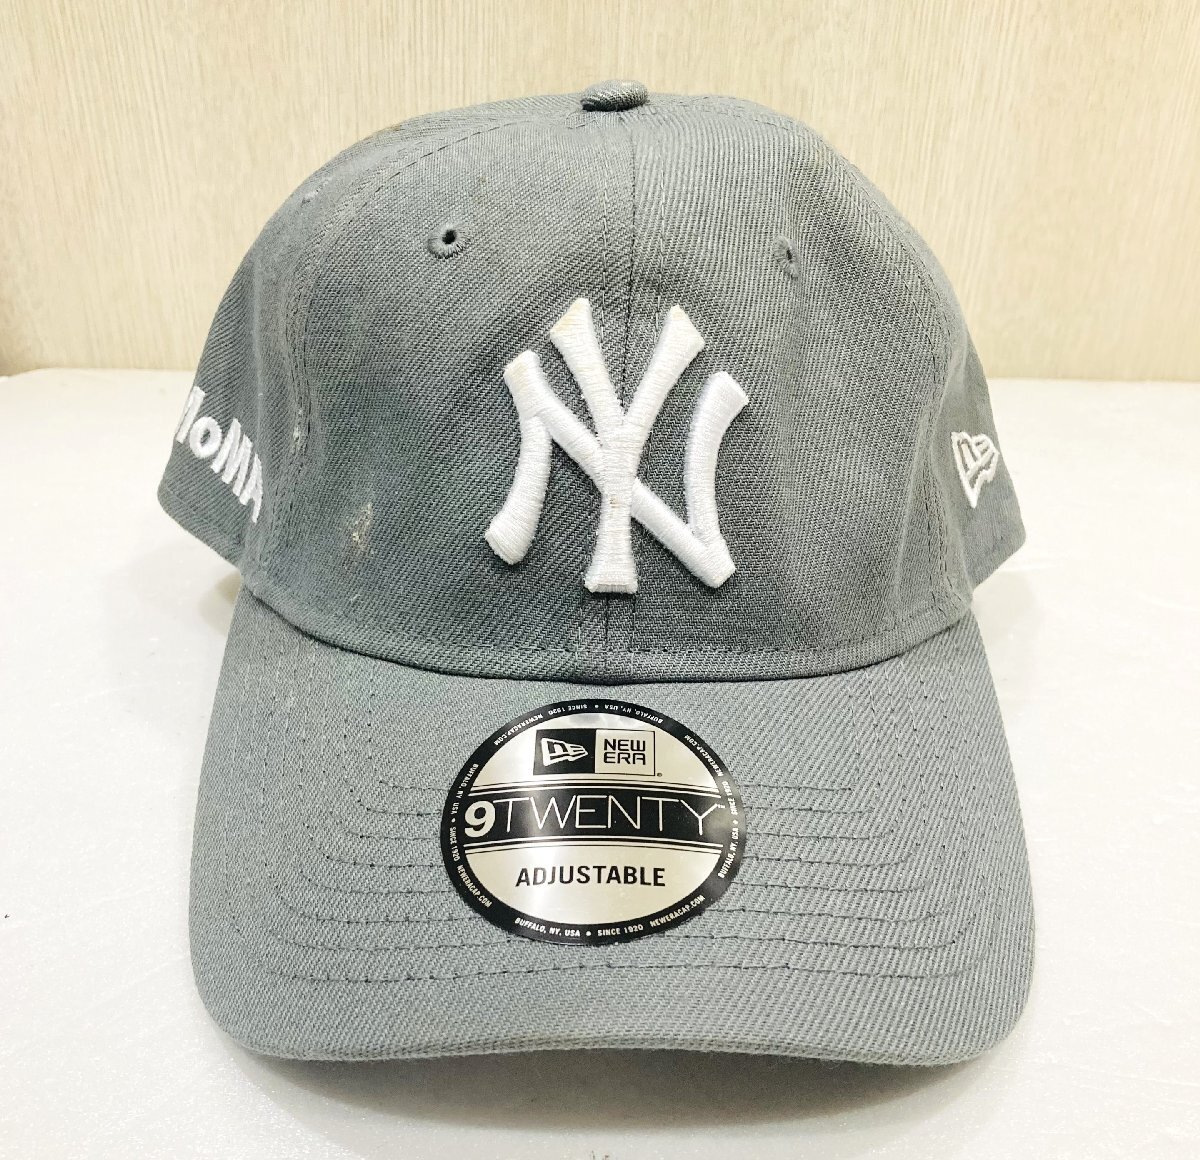 [76] ⑤ 1 jpy ~ long-term keeping goods MoMA LOGO New York yan Keith New York Yankees baseball cap .NEWERA New Era cap hat 